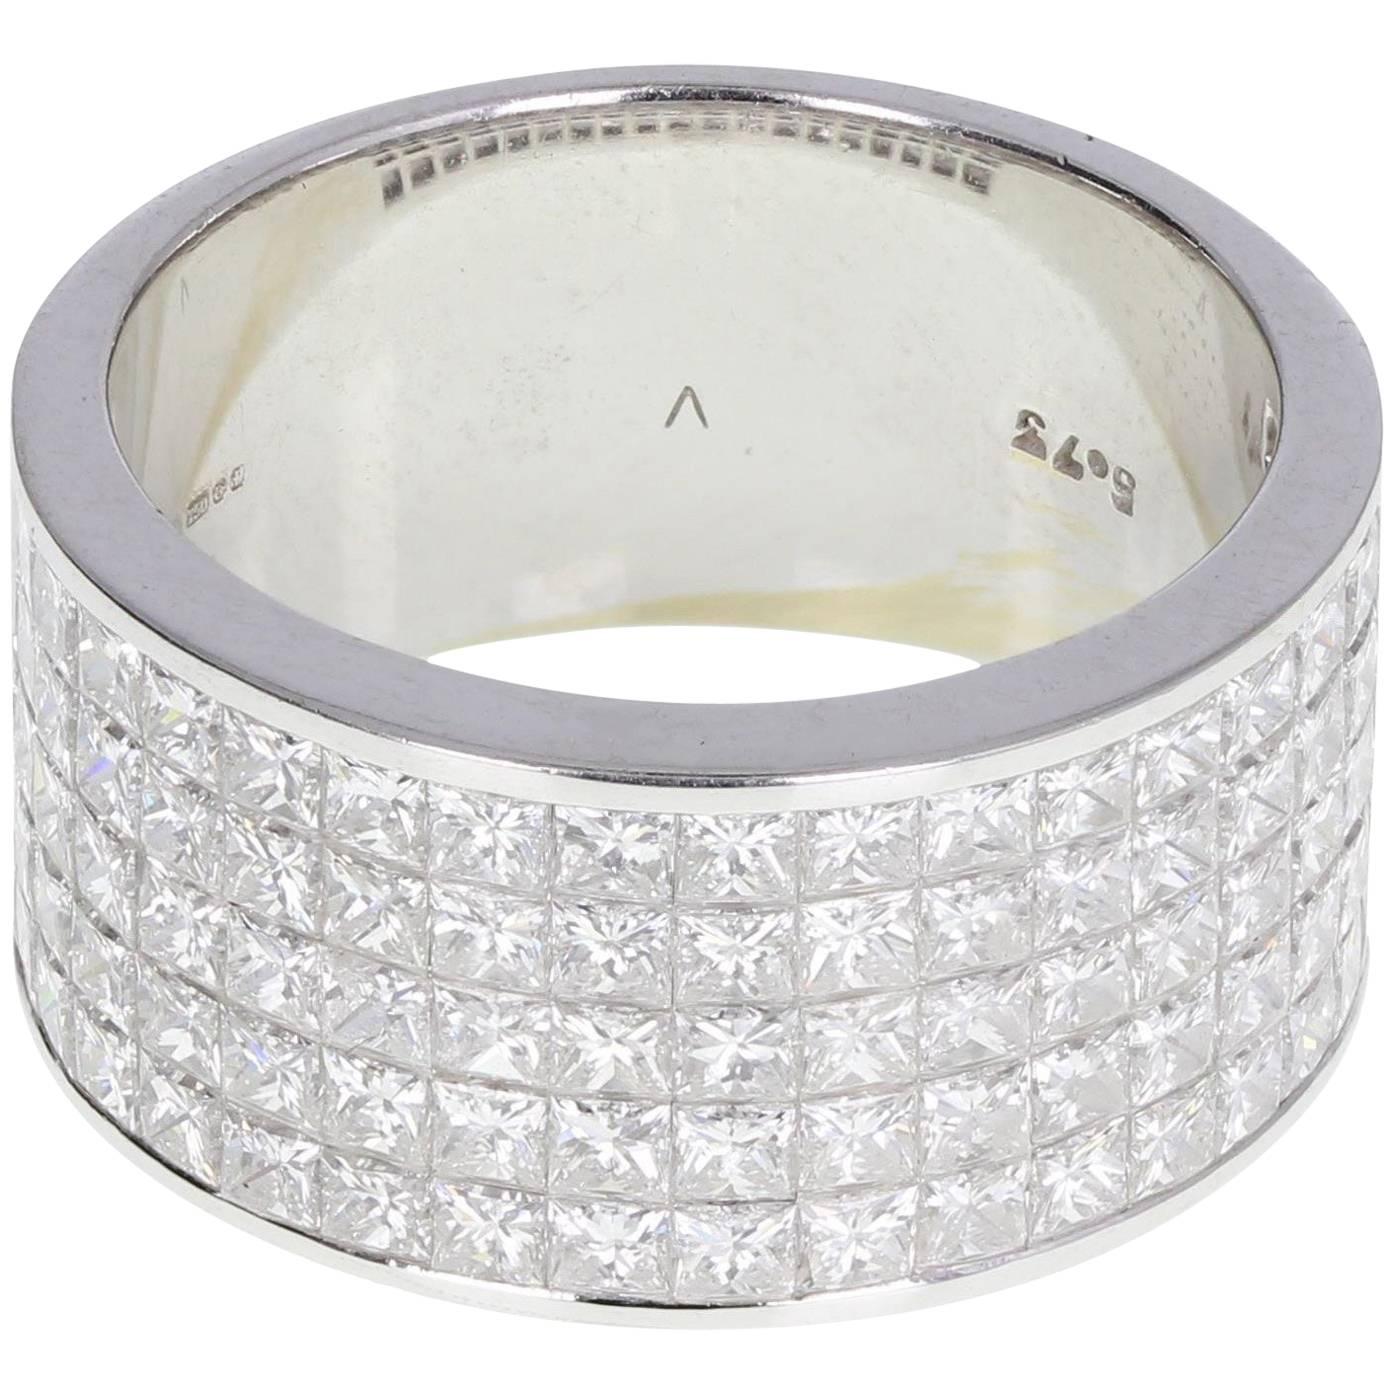 Invisibly Set Princess Cut Diamond Band Ring